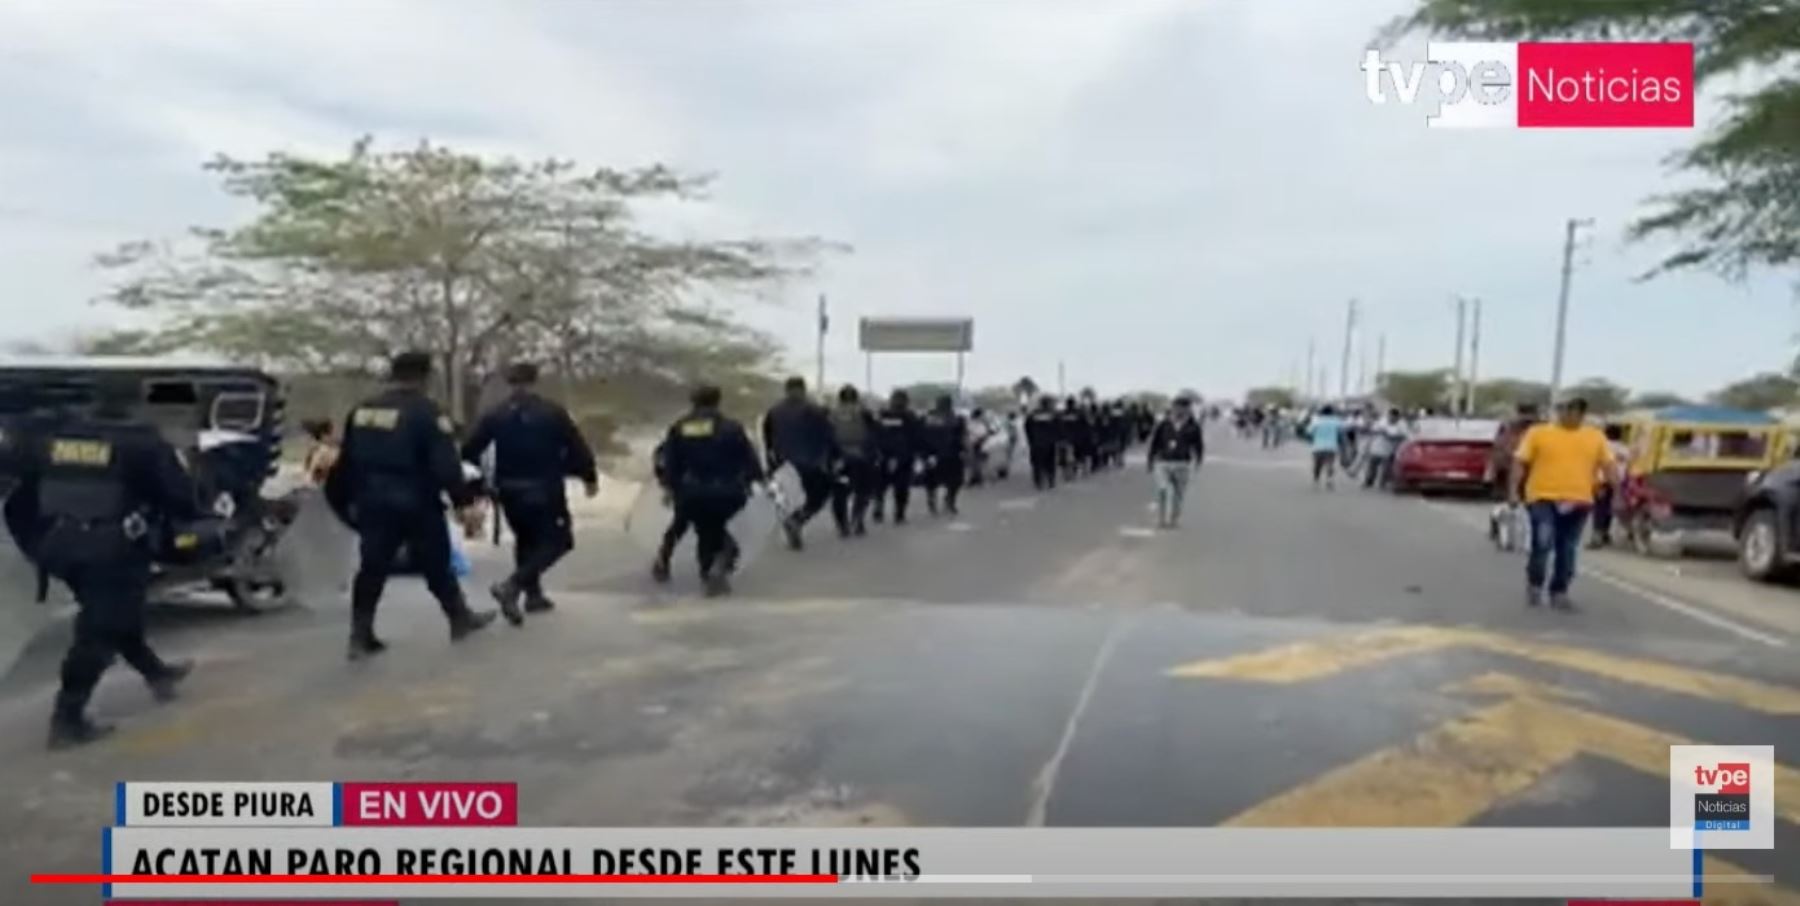 Piura: ronderos acatan paro y bloquean carretera de ingreso a Chulucanas | Noticias | Agencia Peruana de Noticias Andina